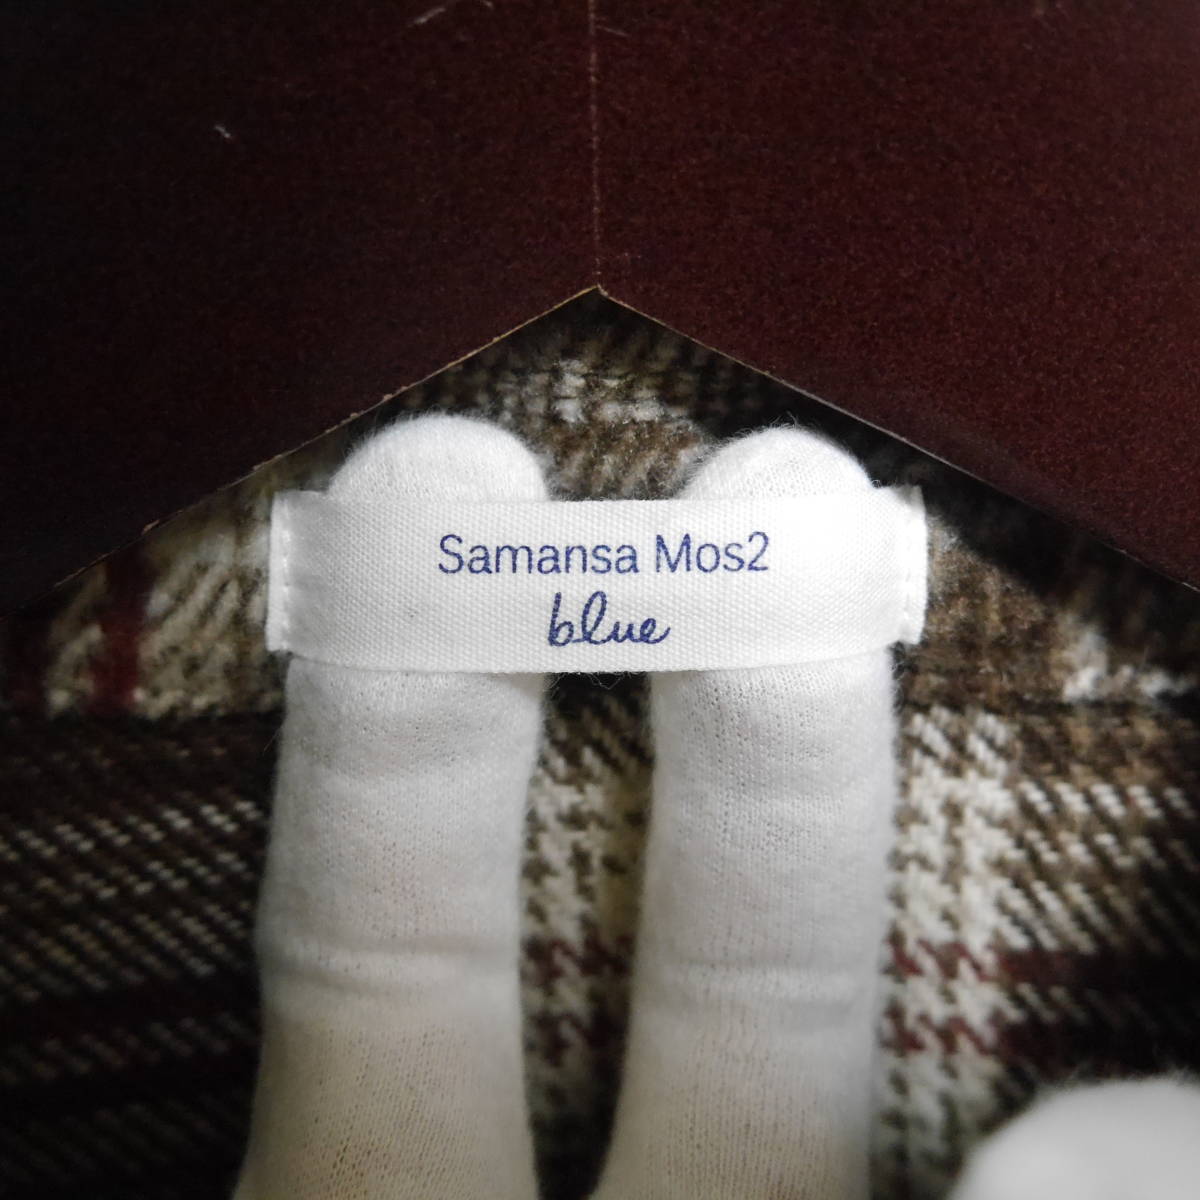 A492 * Samansa Mos2 blue |sa man sa Moss Moss blue jacket tea used size F